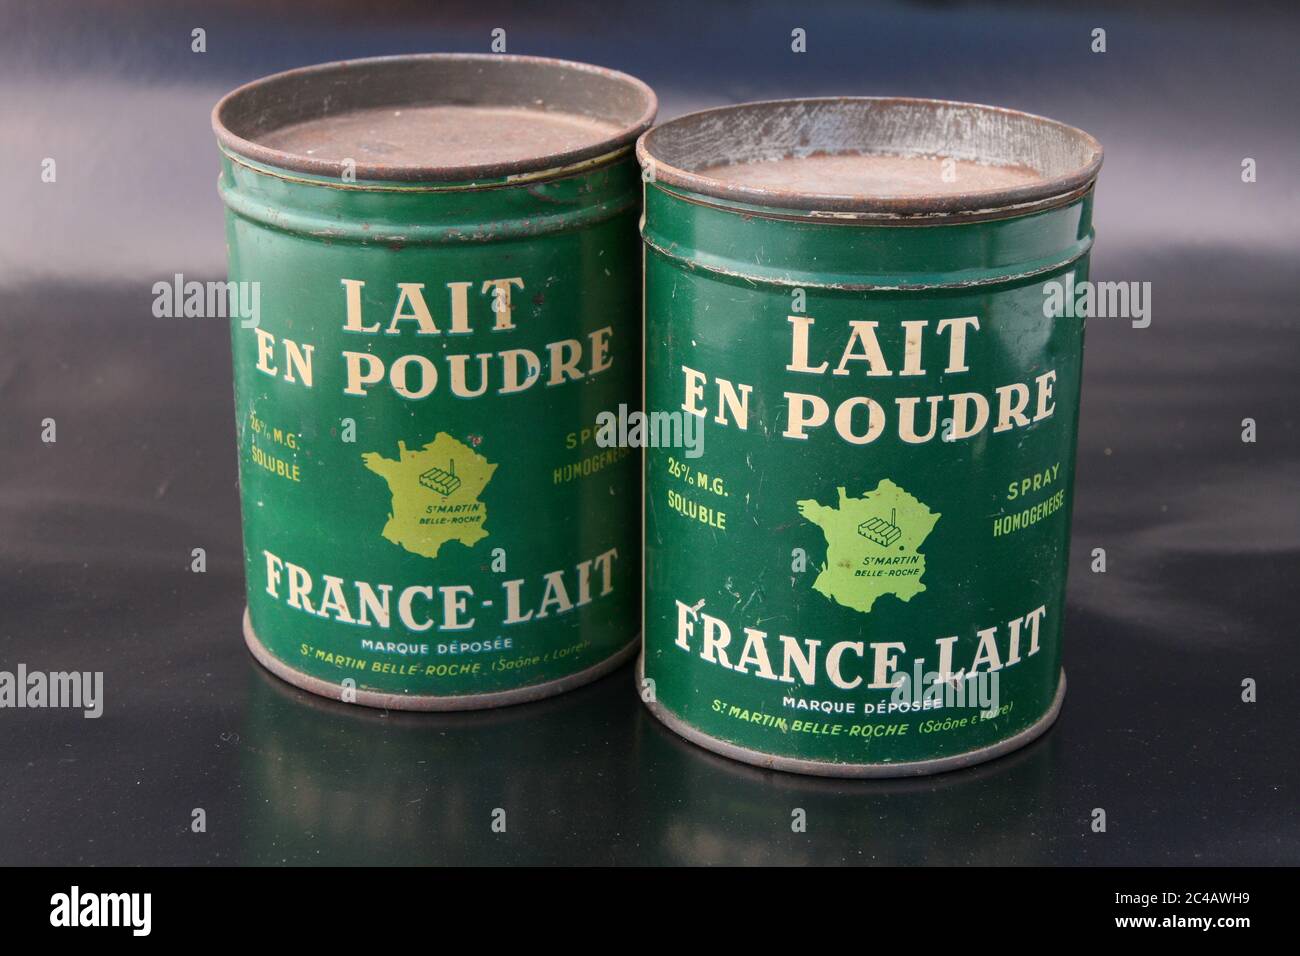 Boites de lait en poudre France Lait vers 1950 / Boxes of France Lait powdered milk circa 1950 Stock Photo